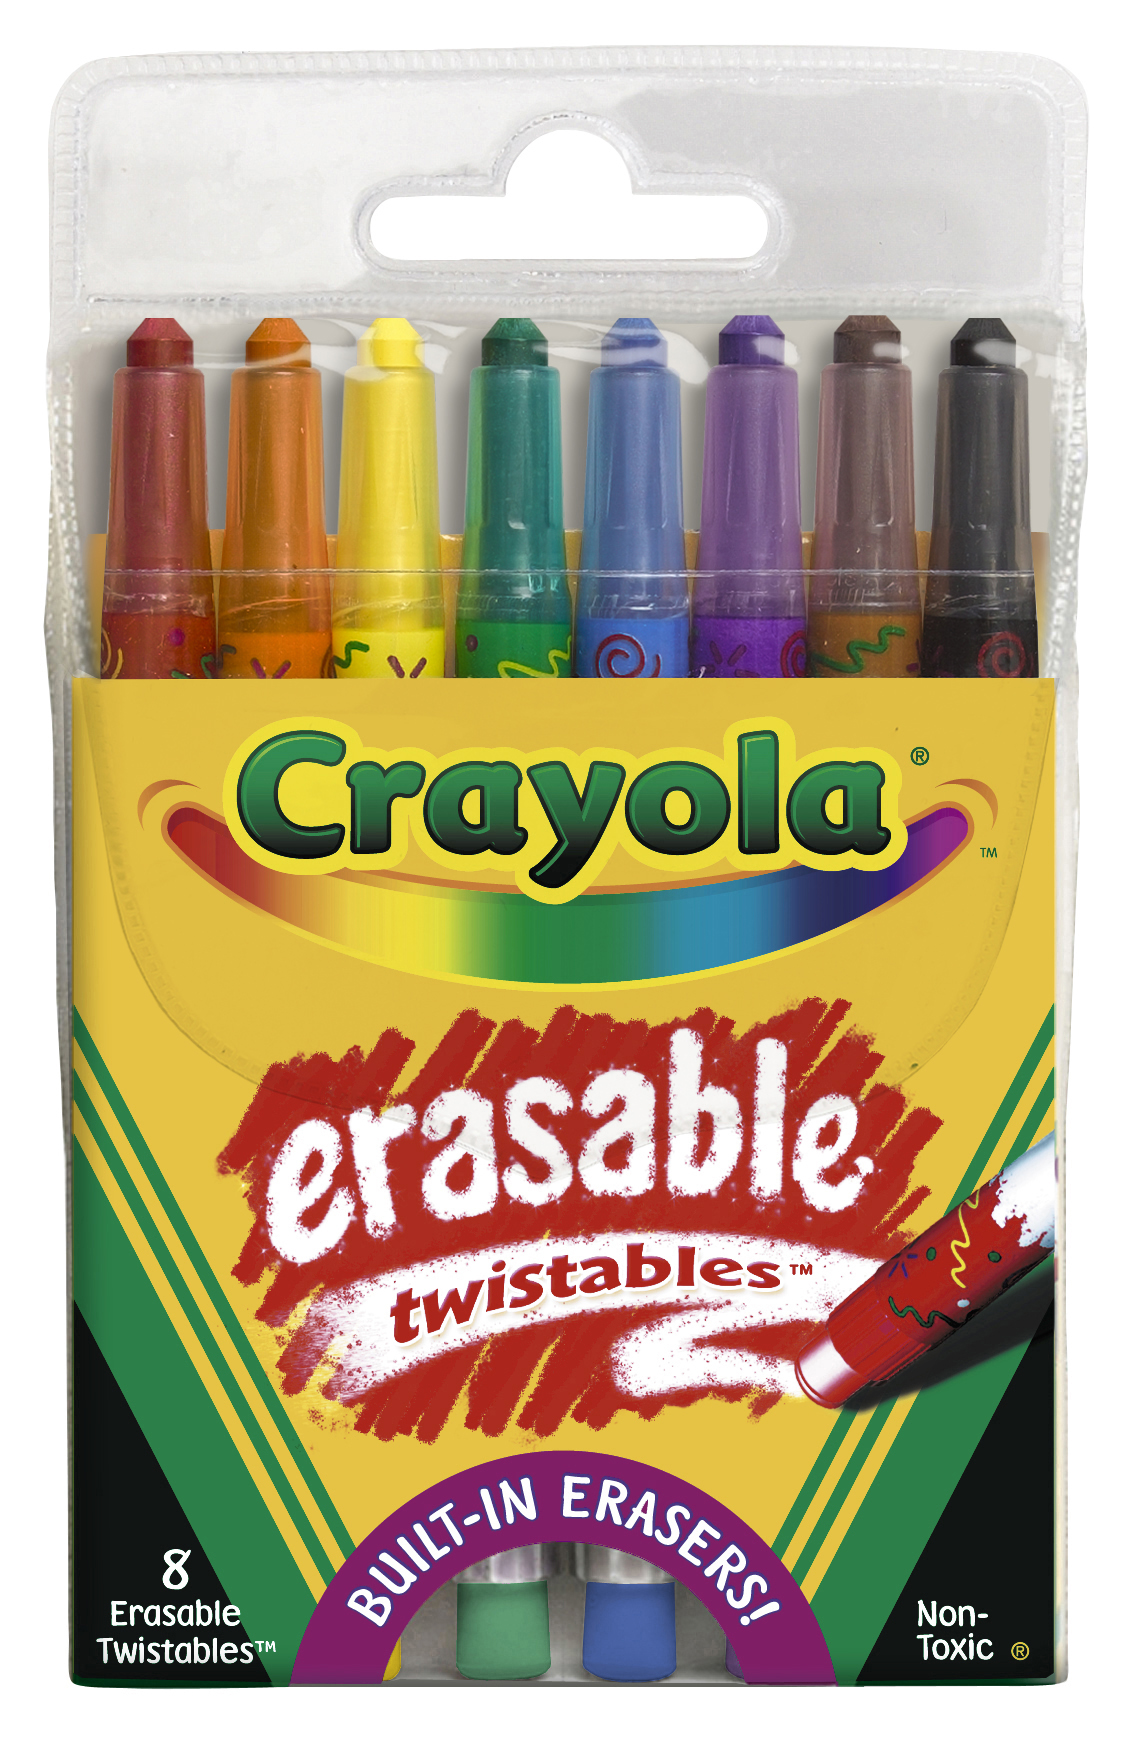 History | crayola.co.uk